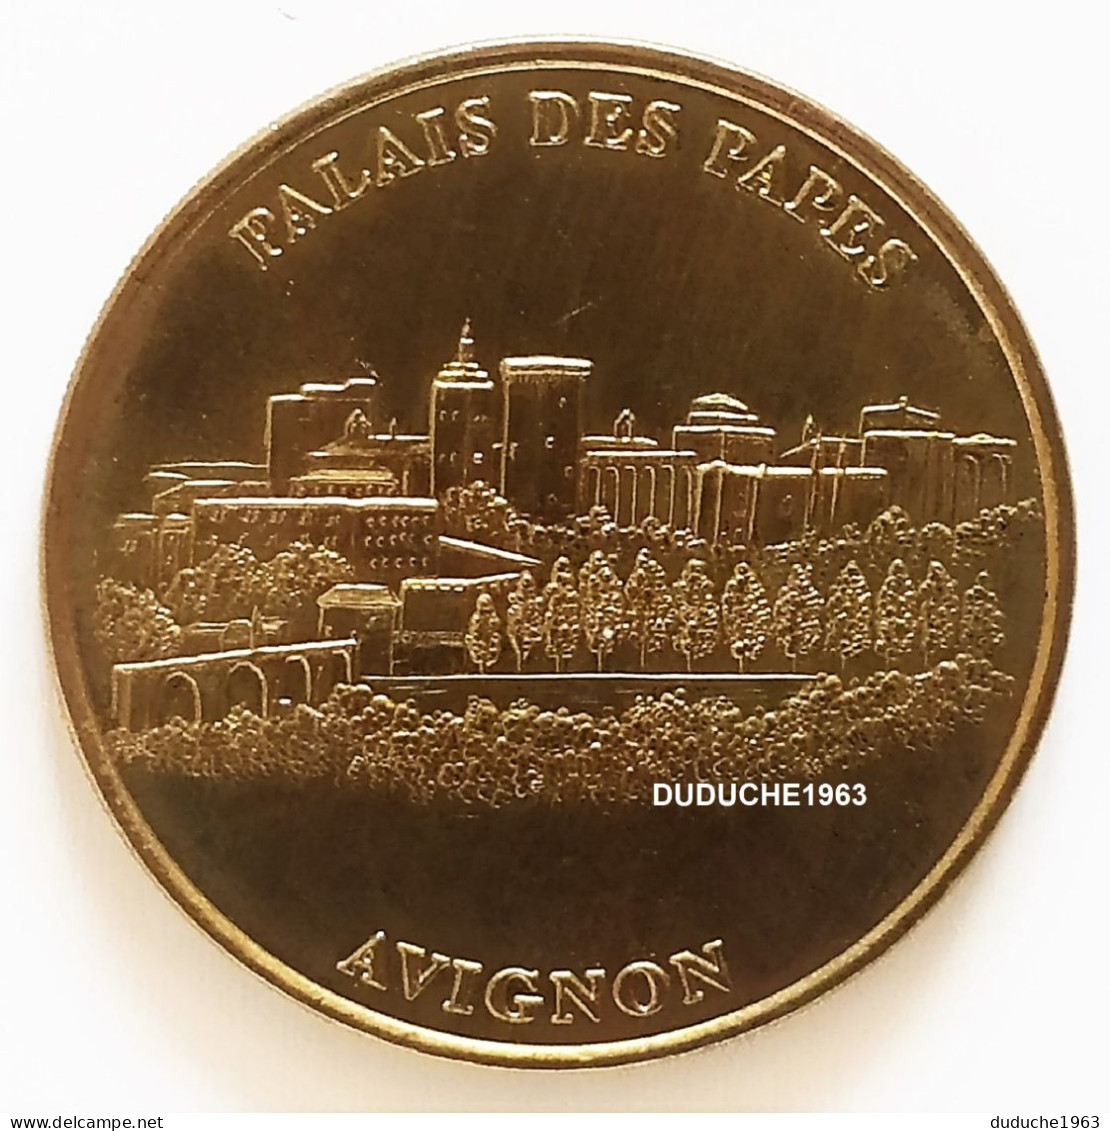 Monnaie De Paris 84. Avignon - Palais Des Papes 2001 - 2001